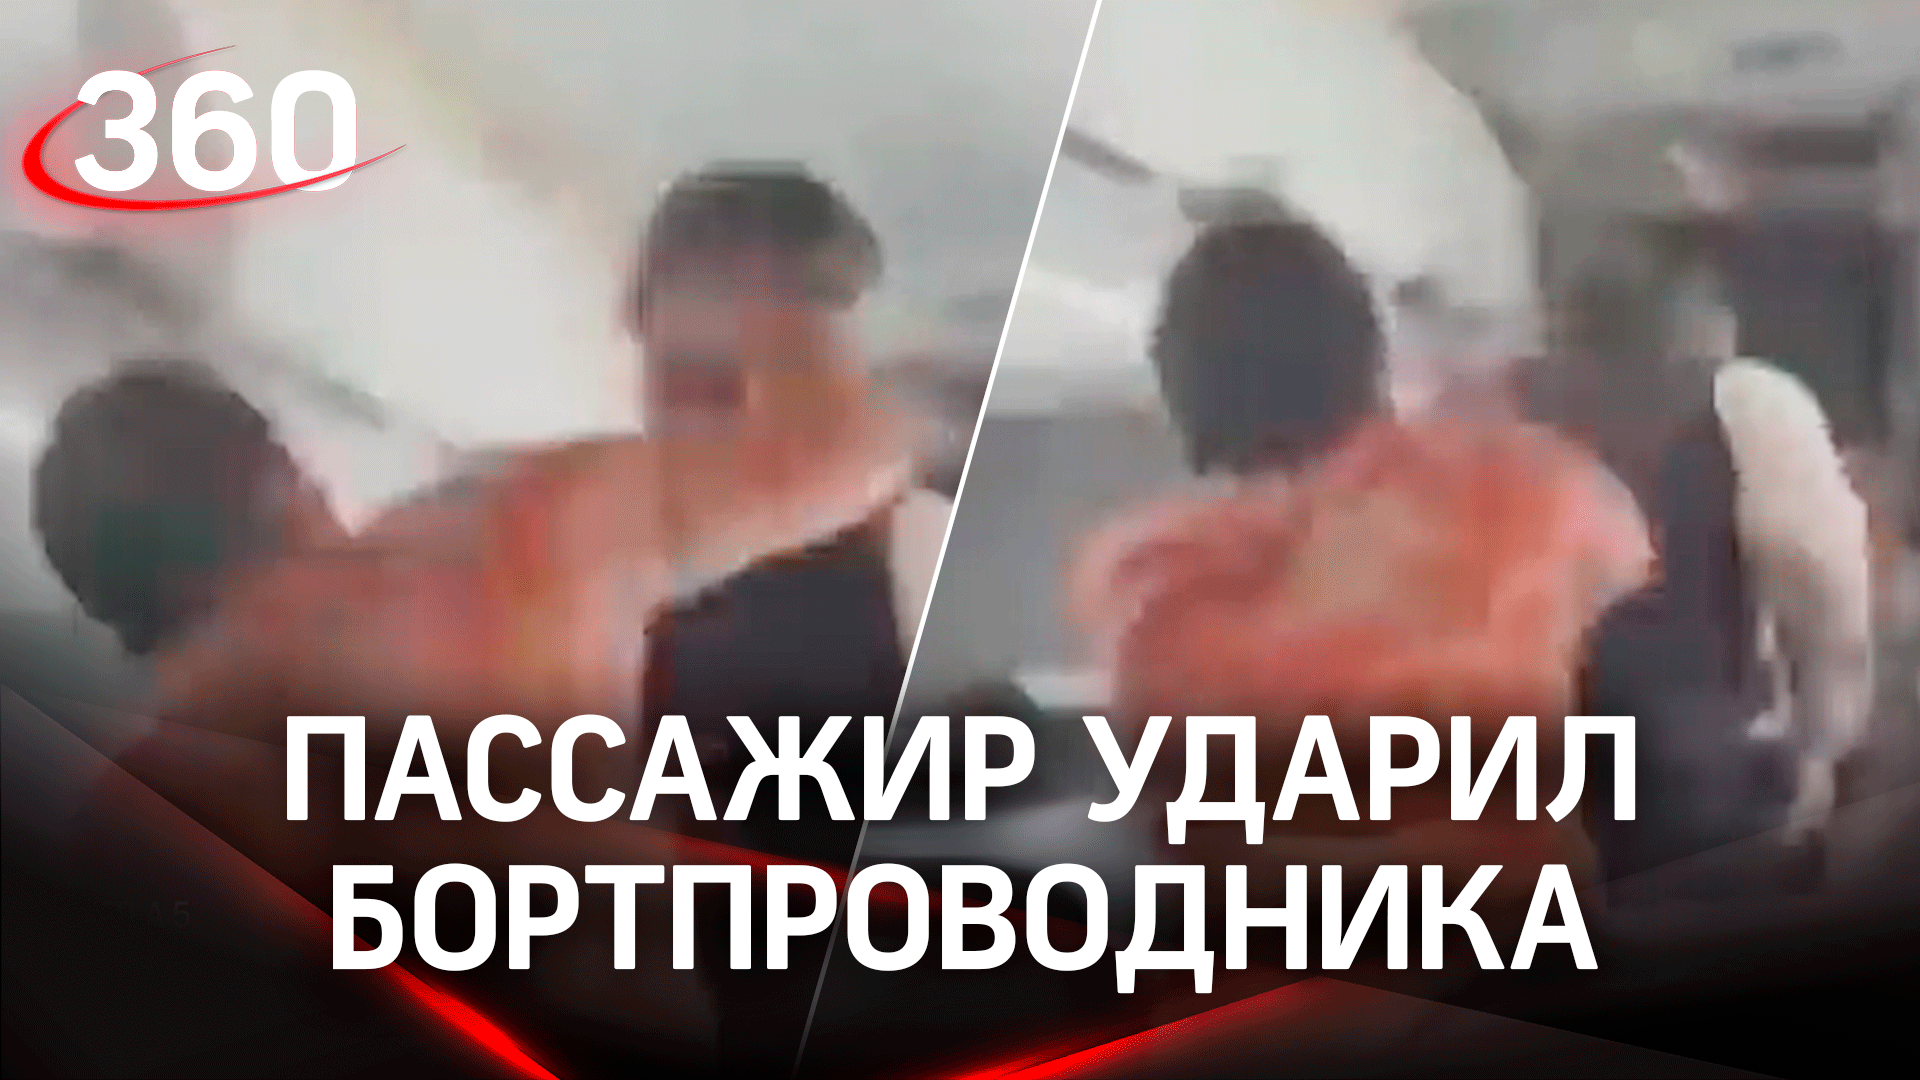 Видео: пассажир ударил бортпроводника кулаком в затылок